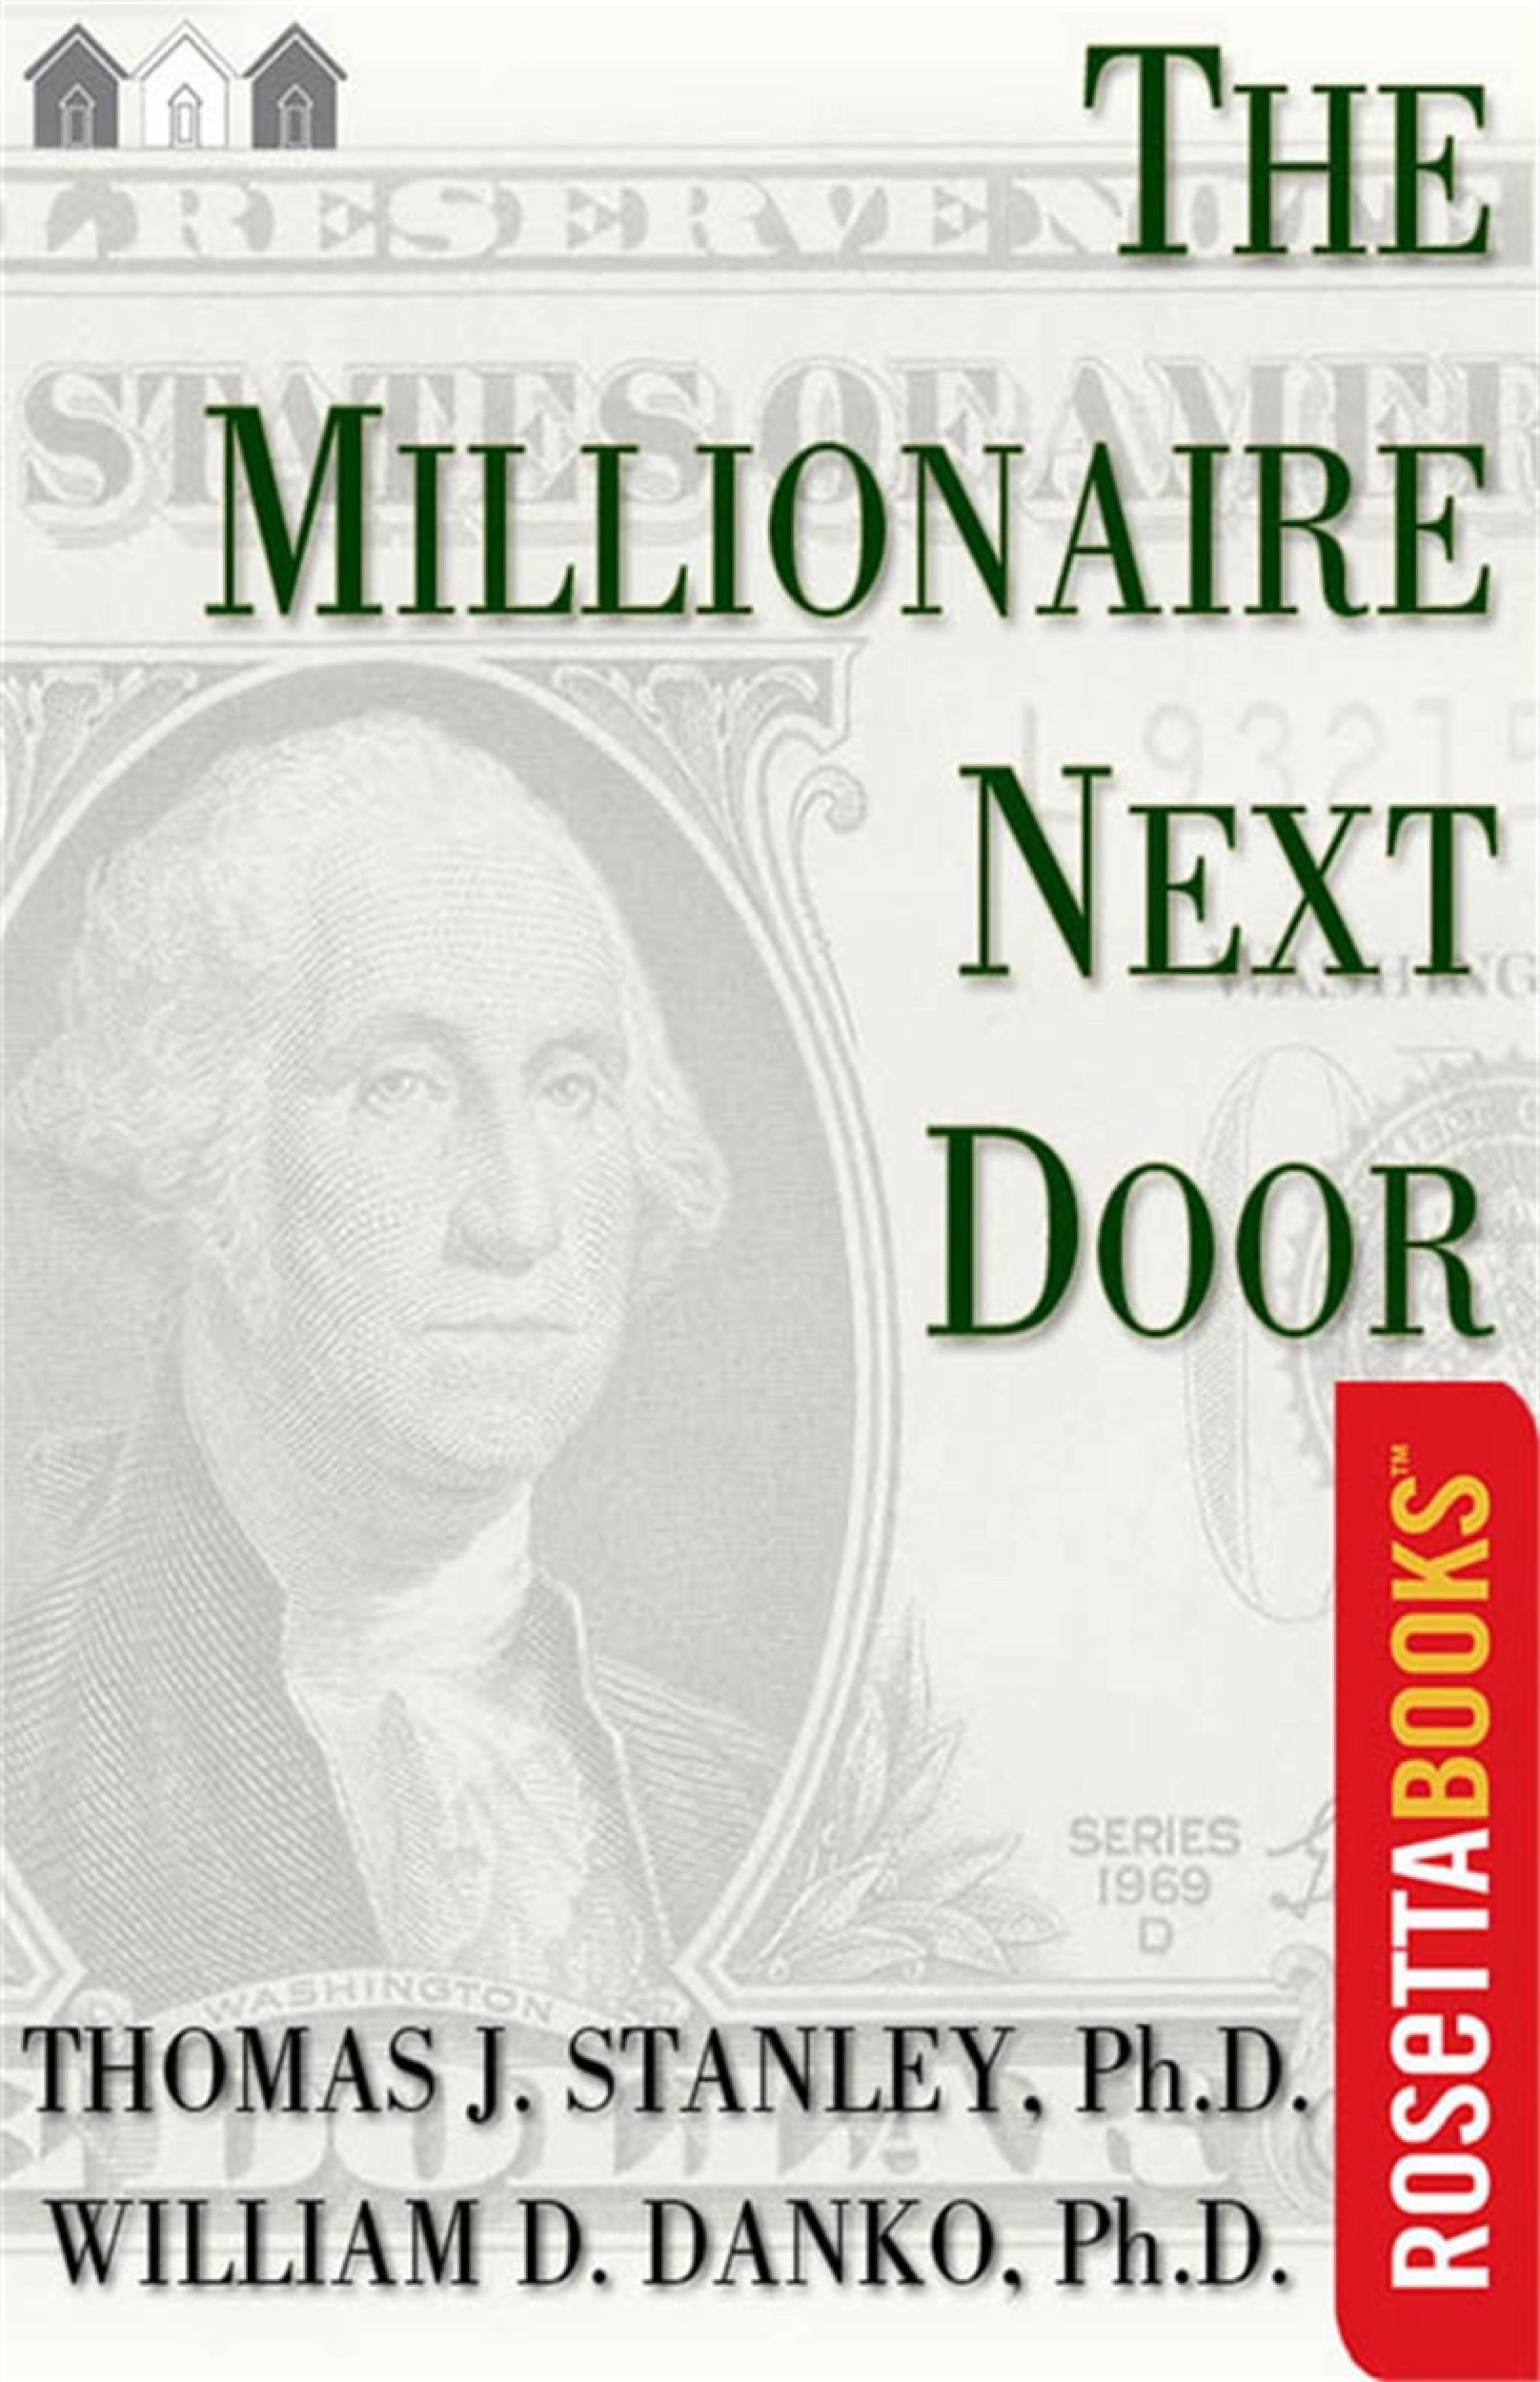 the millionaire next door audio book